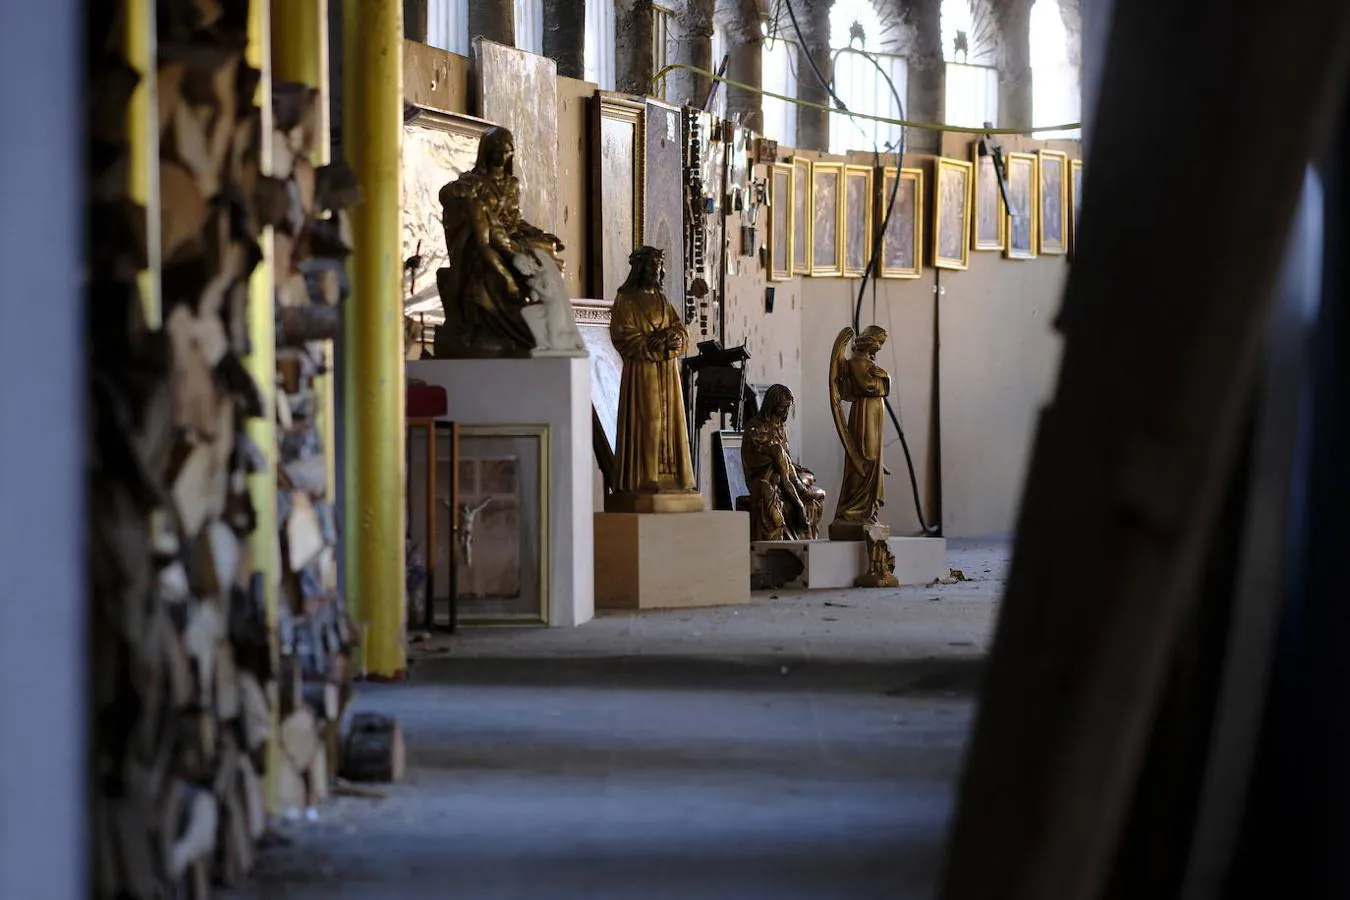 El proyecto paró por falta de fondos. En 2018, ABC visitó la catedral junto a Justo. En la imagen, algunas de las iconografías religiosas sin espacio dentro en el edificio